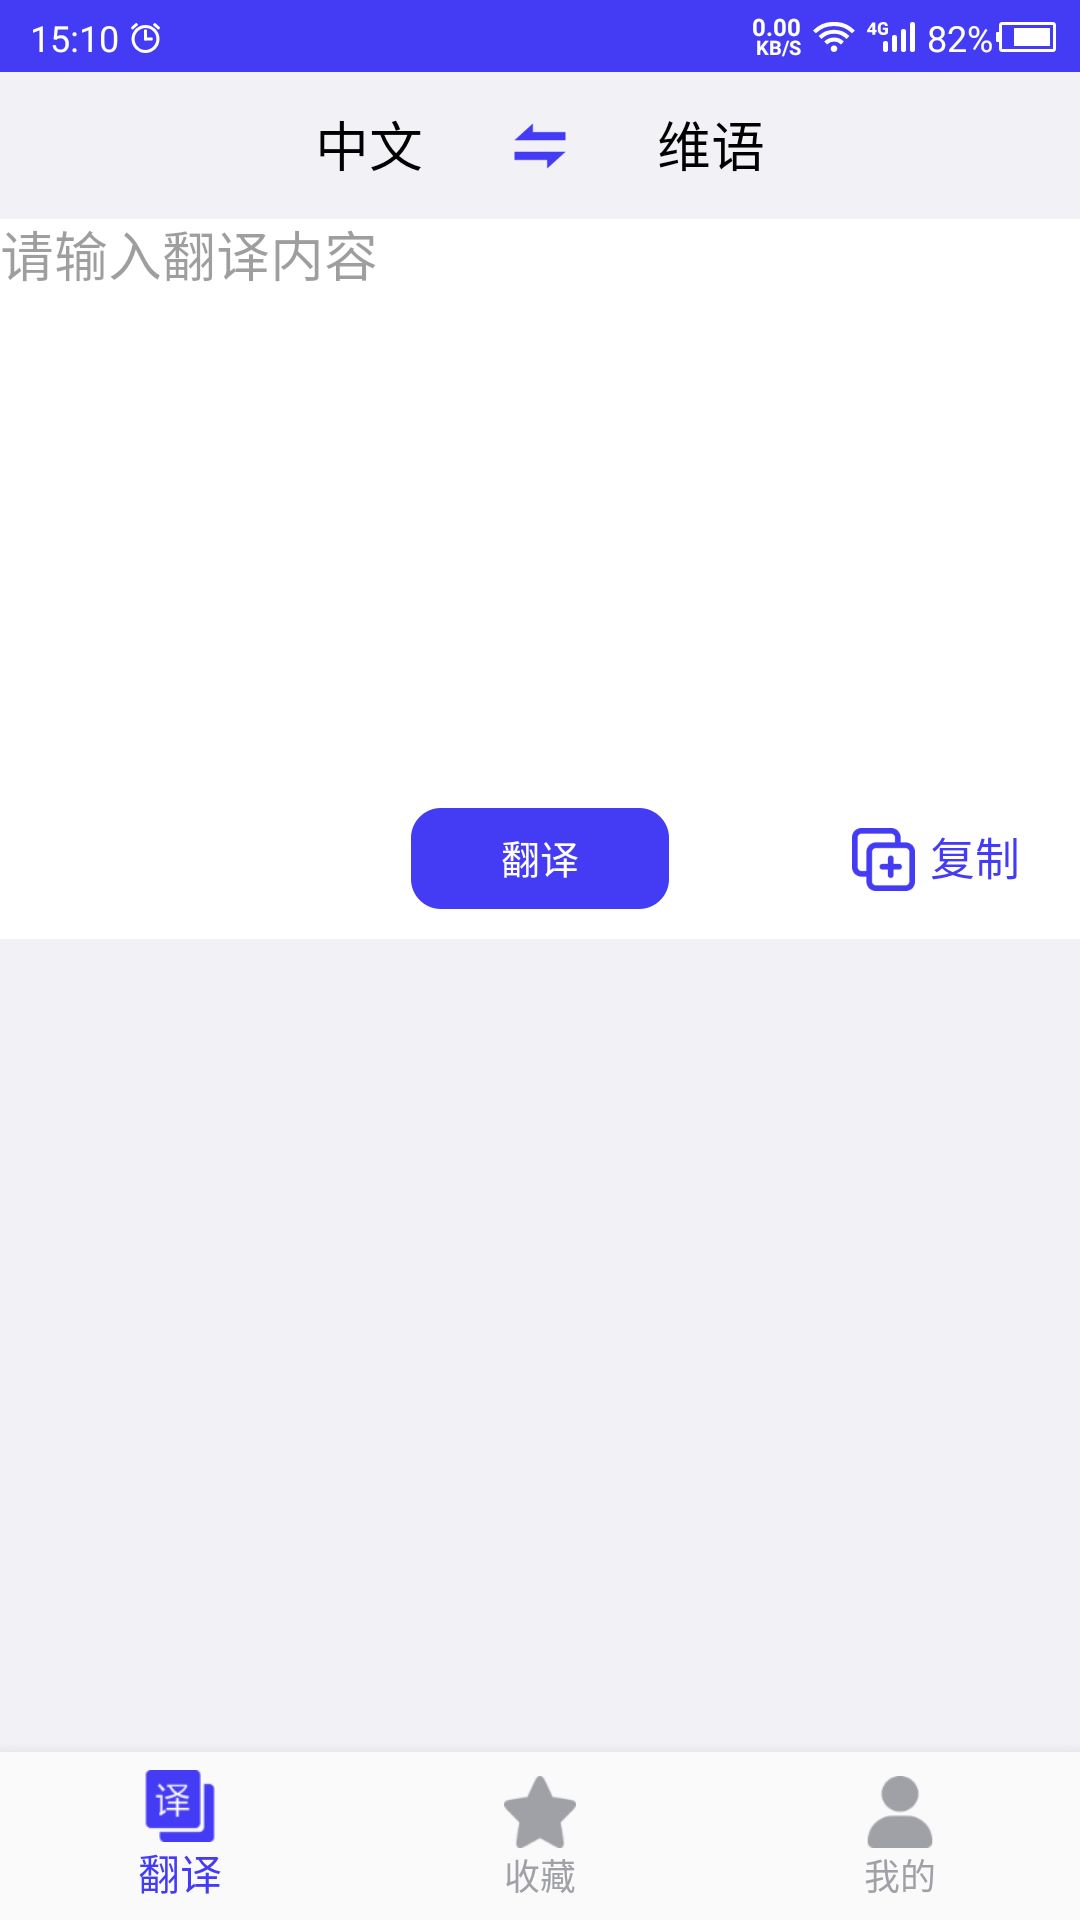 维语翻译语言翻译app官方版图片1